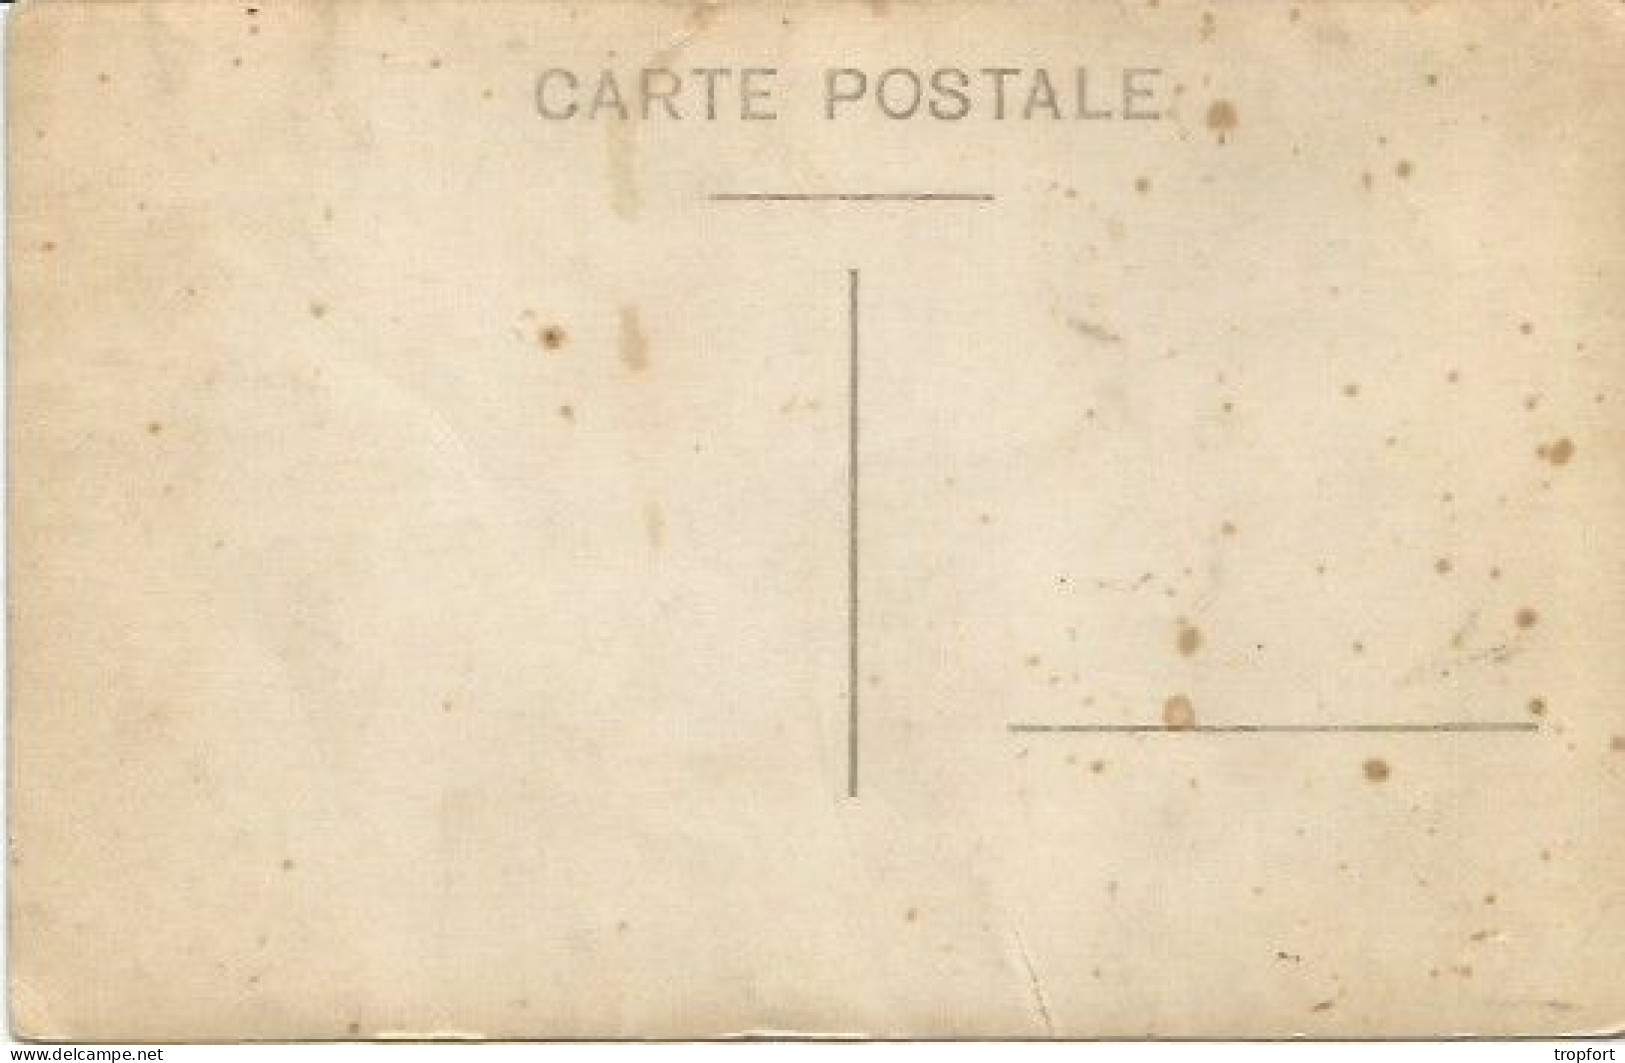 CPA  PHOTO  GROUPE DE MILITAIRES POILUS CASQUE REGIMENT - Guerre 1914-18